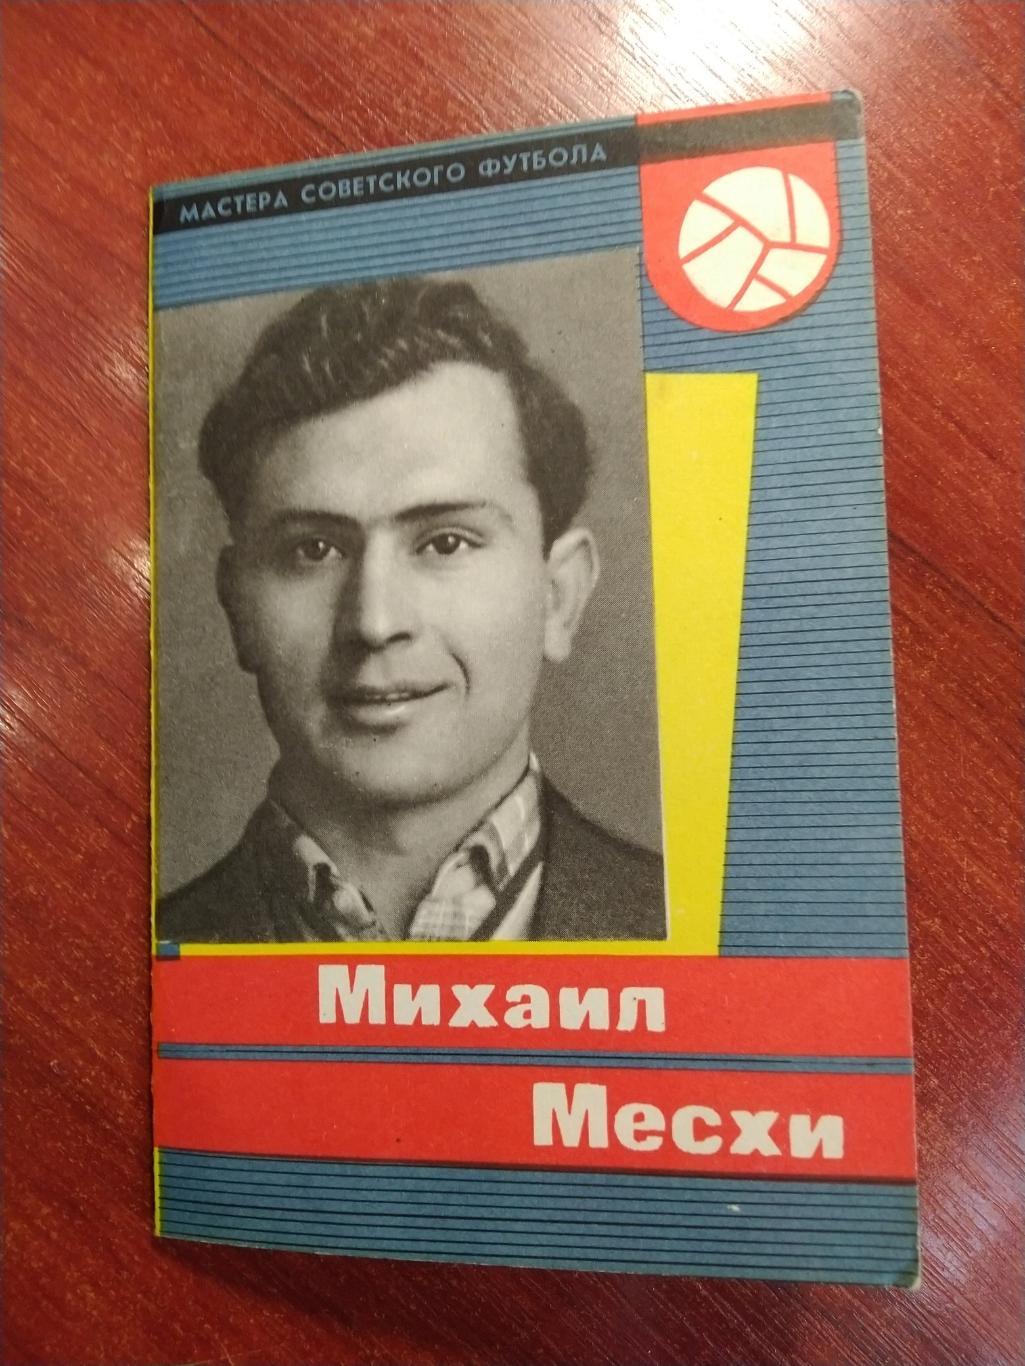 Мастера советского футбола Михаил Месхи